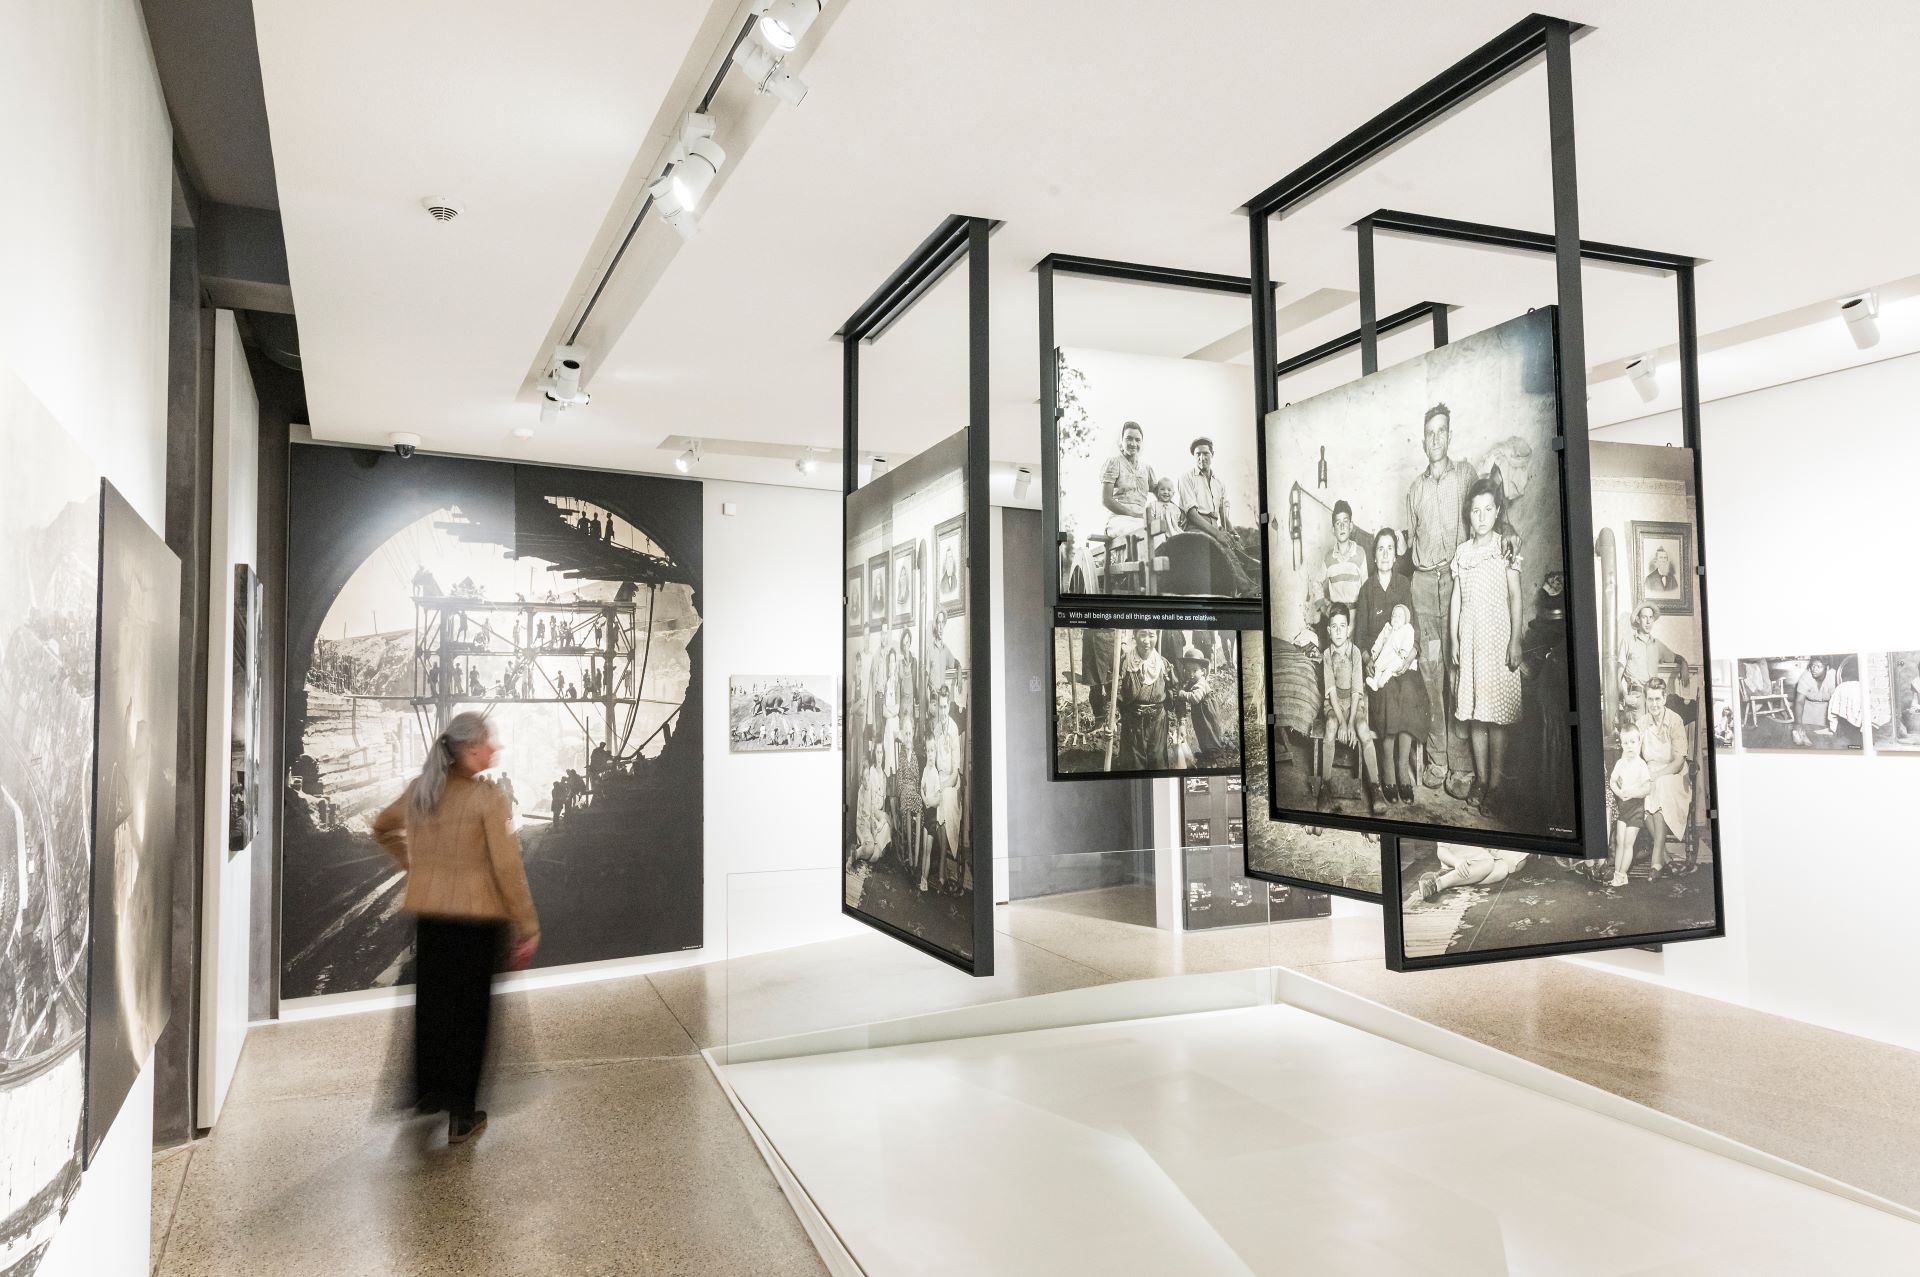 In einer Galerie hängen schwarz-weiße Bilder von der Decke. Eine Frau geht durch die Ausstellung.